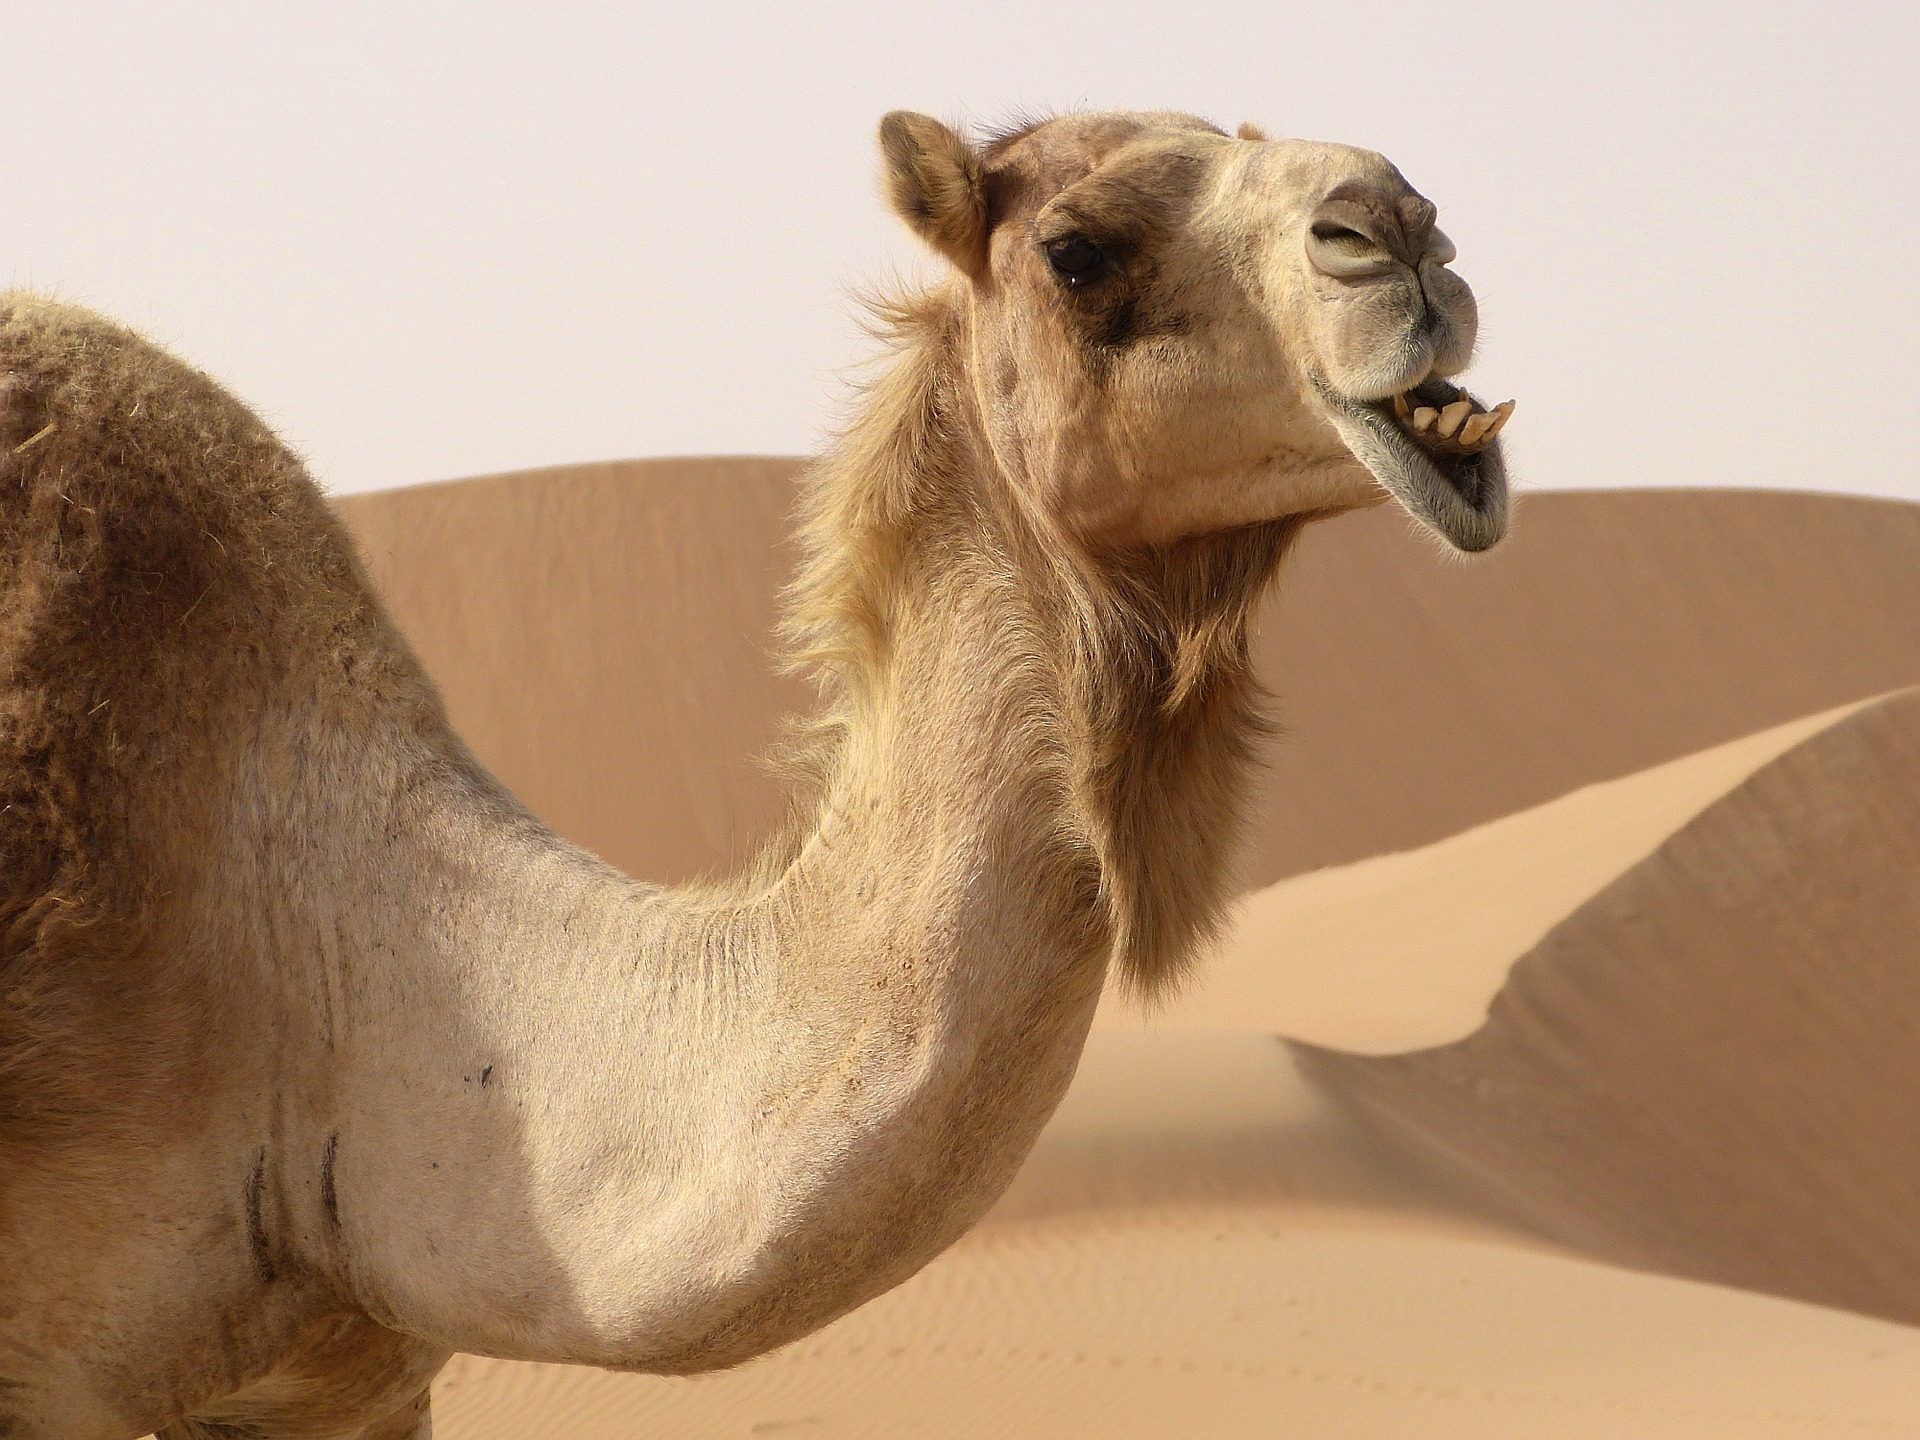 “Lo que el camello imagina, el camellero adivina”